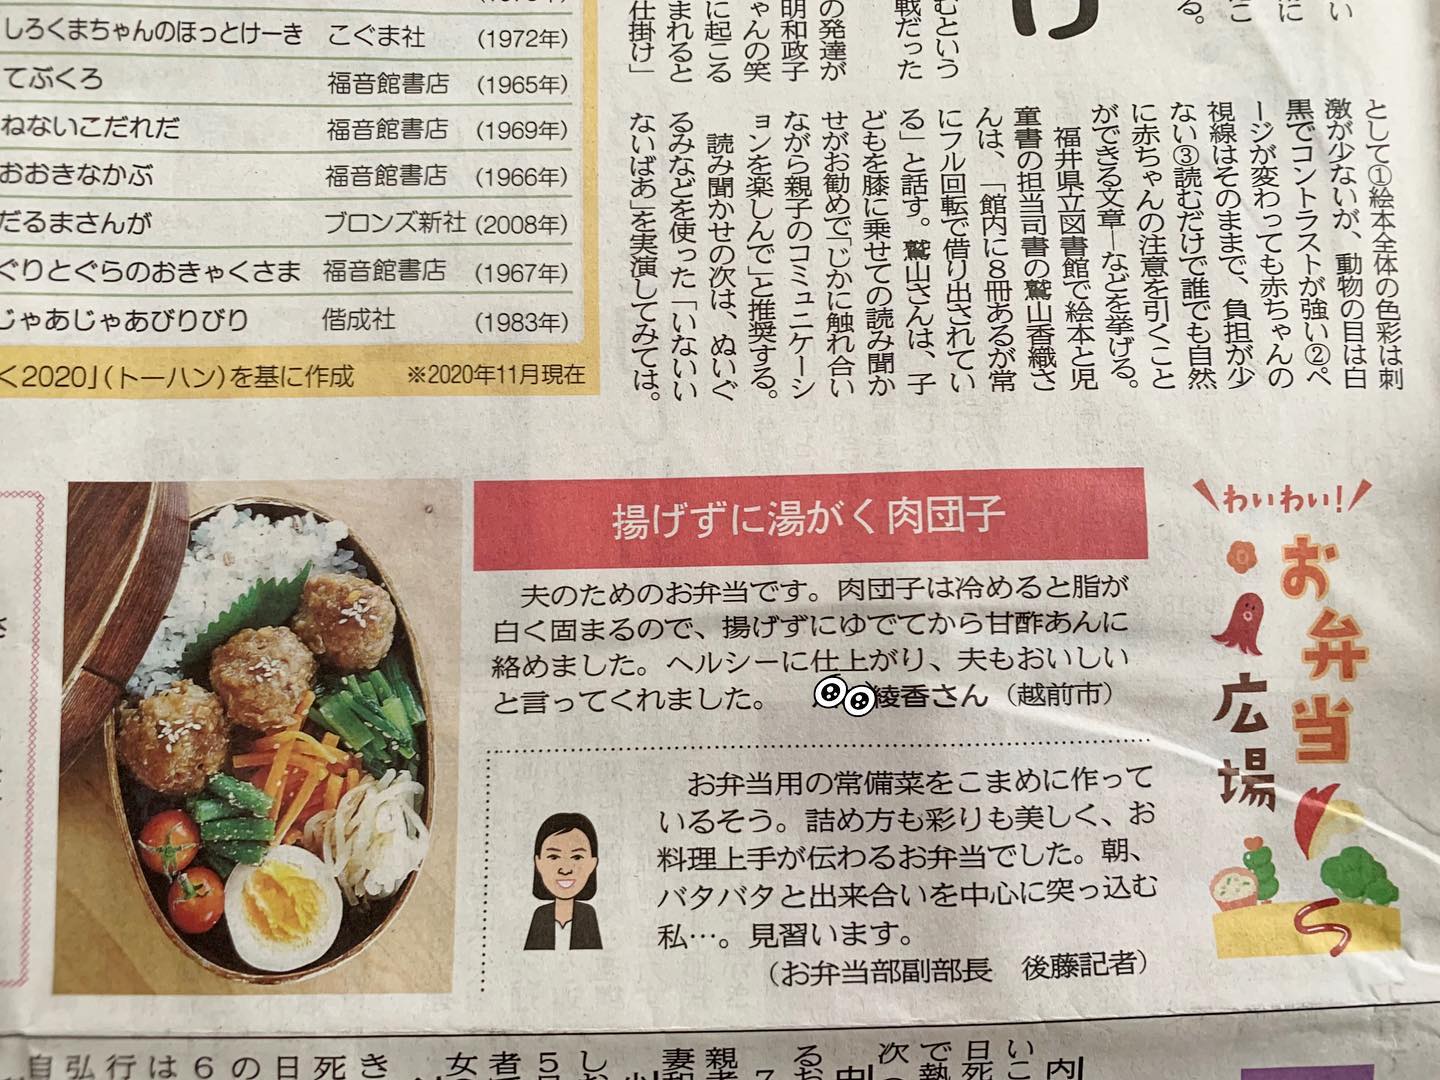 娘のインスタお弁当写真が今日の福井新聞に。離乳食以外のインスタアカウント@nagomi_gohan webサイト「なごみごはん」もあります。上記から飛べます。WordPress修行中の本人が制作。